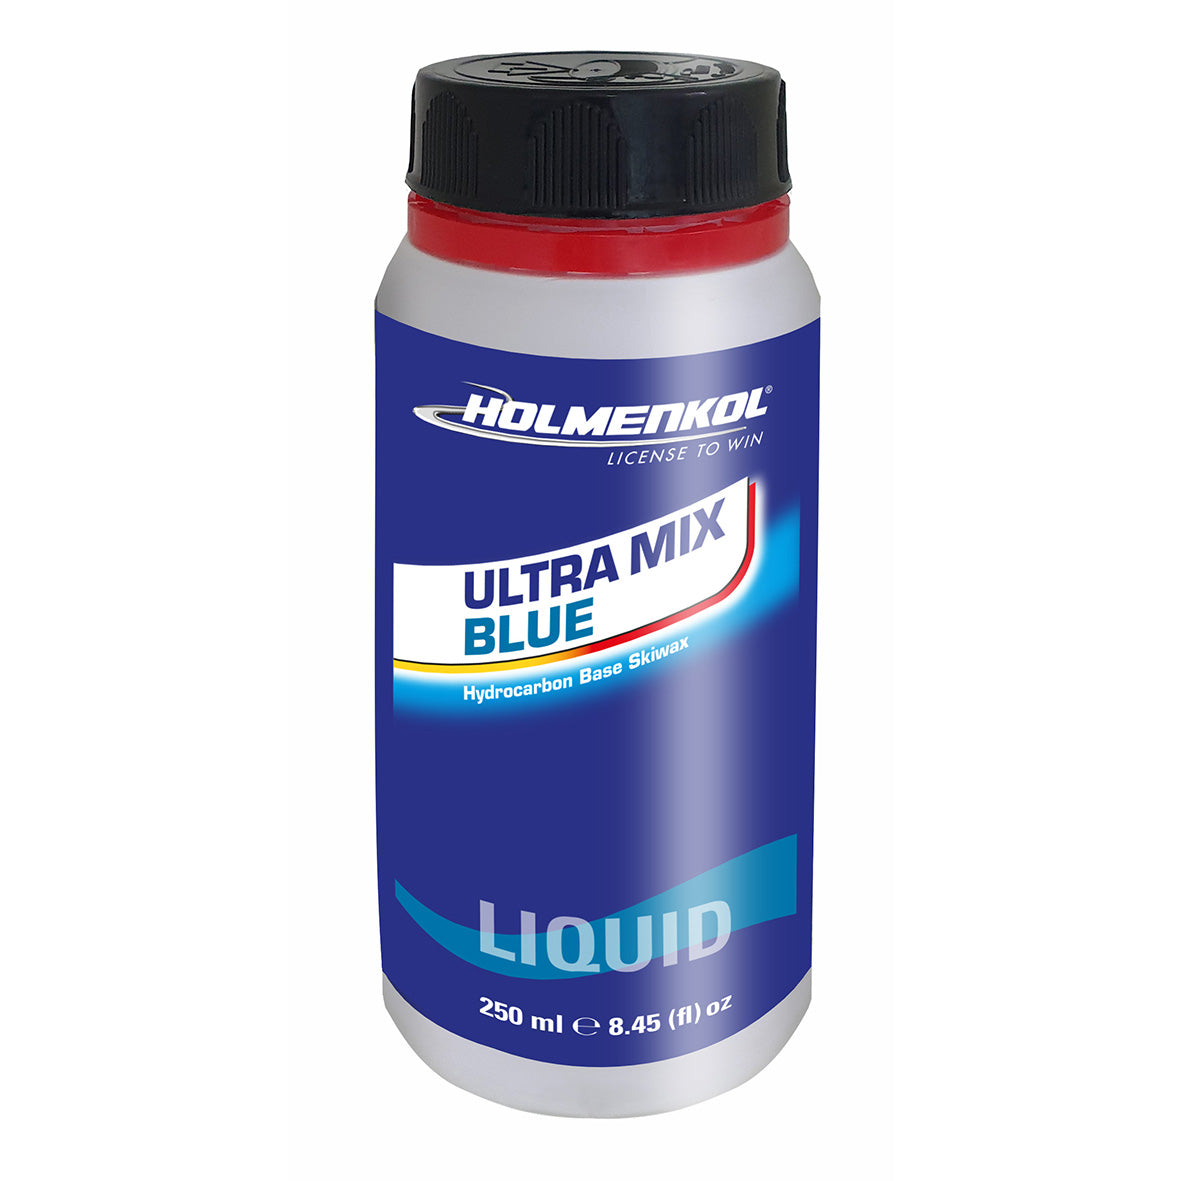 Holmenkol Ultra Mix Blue liquid  250ml - 0